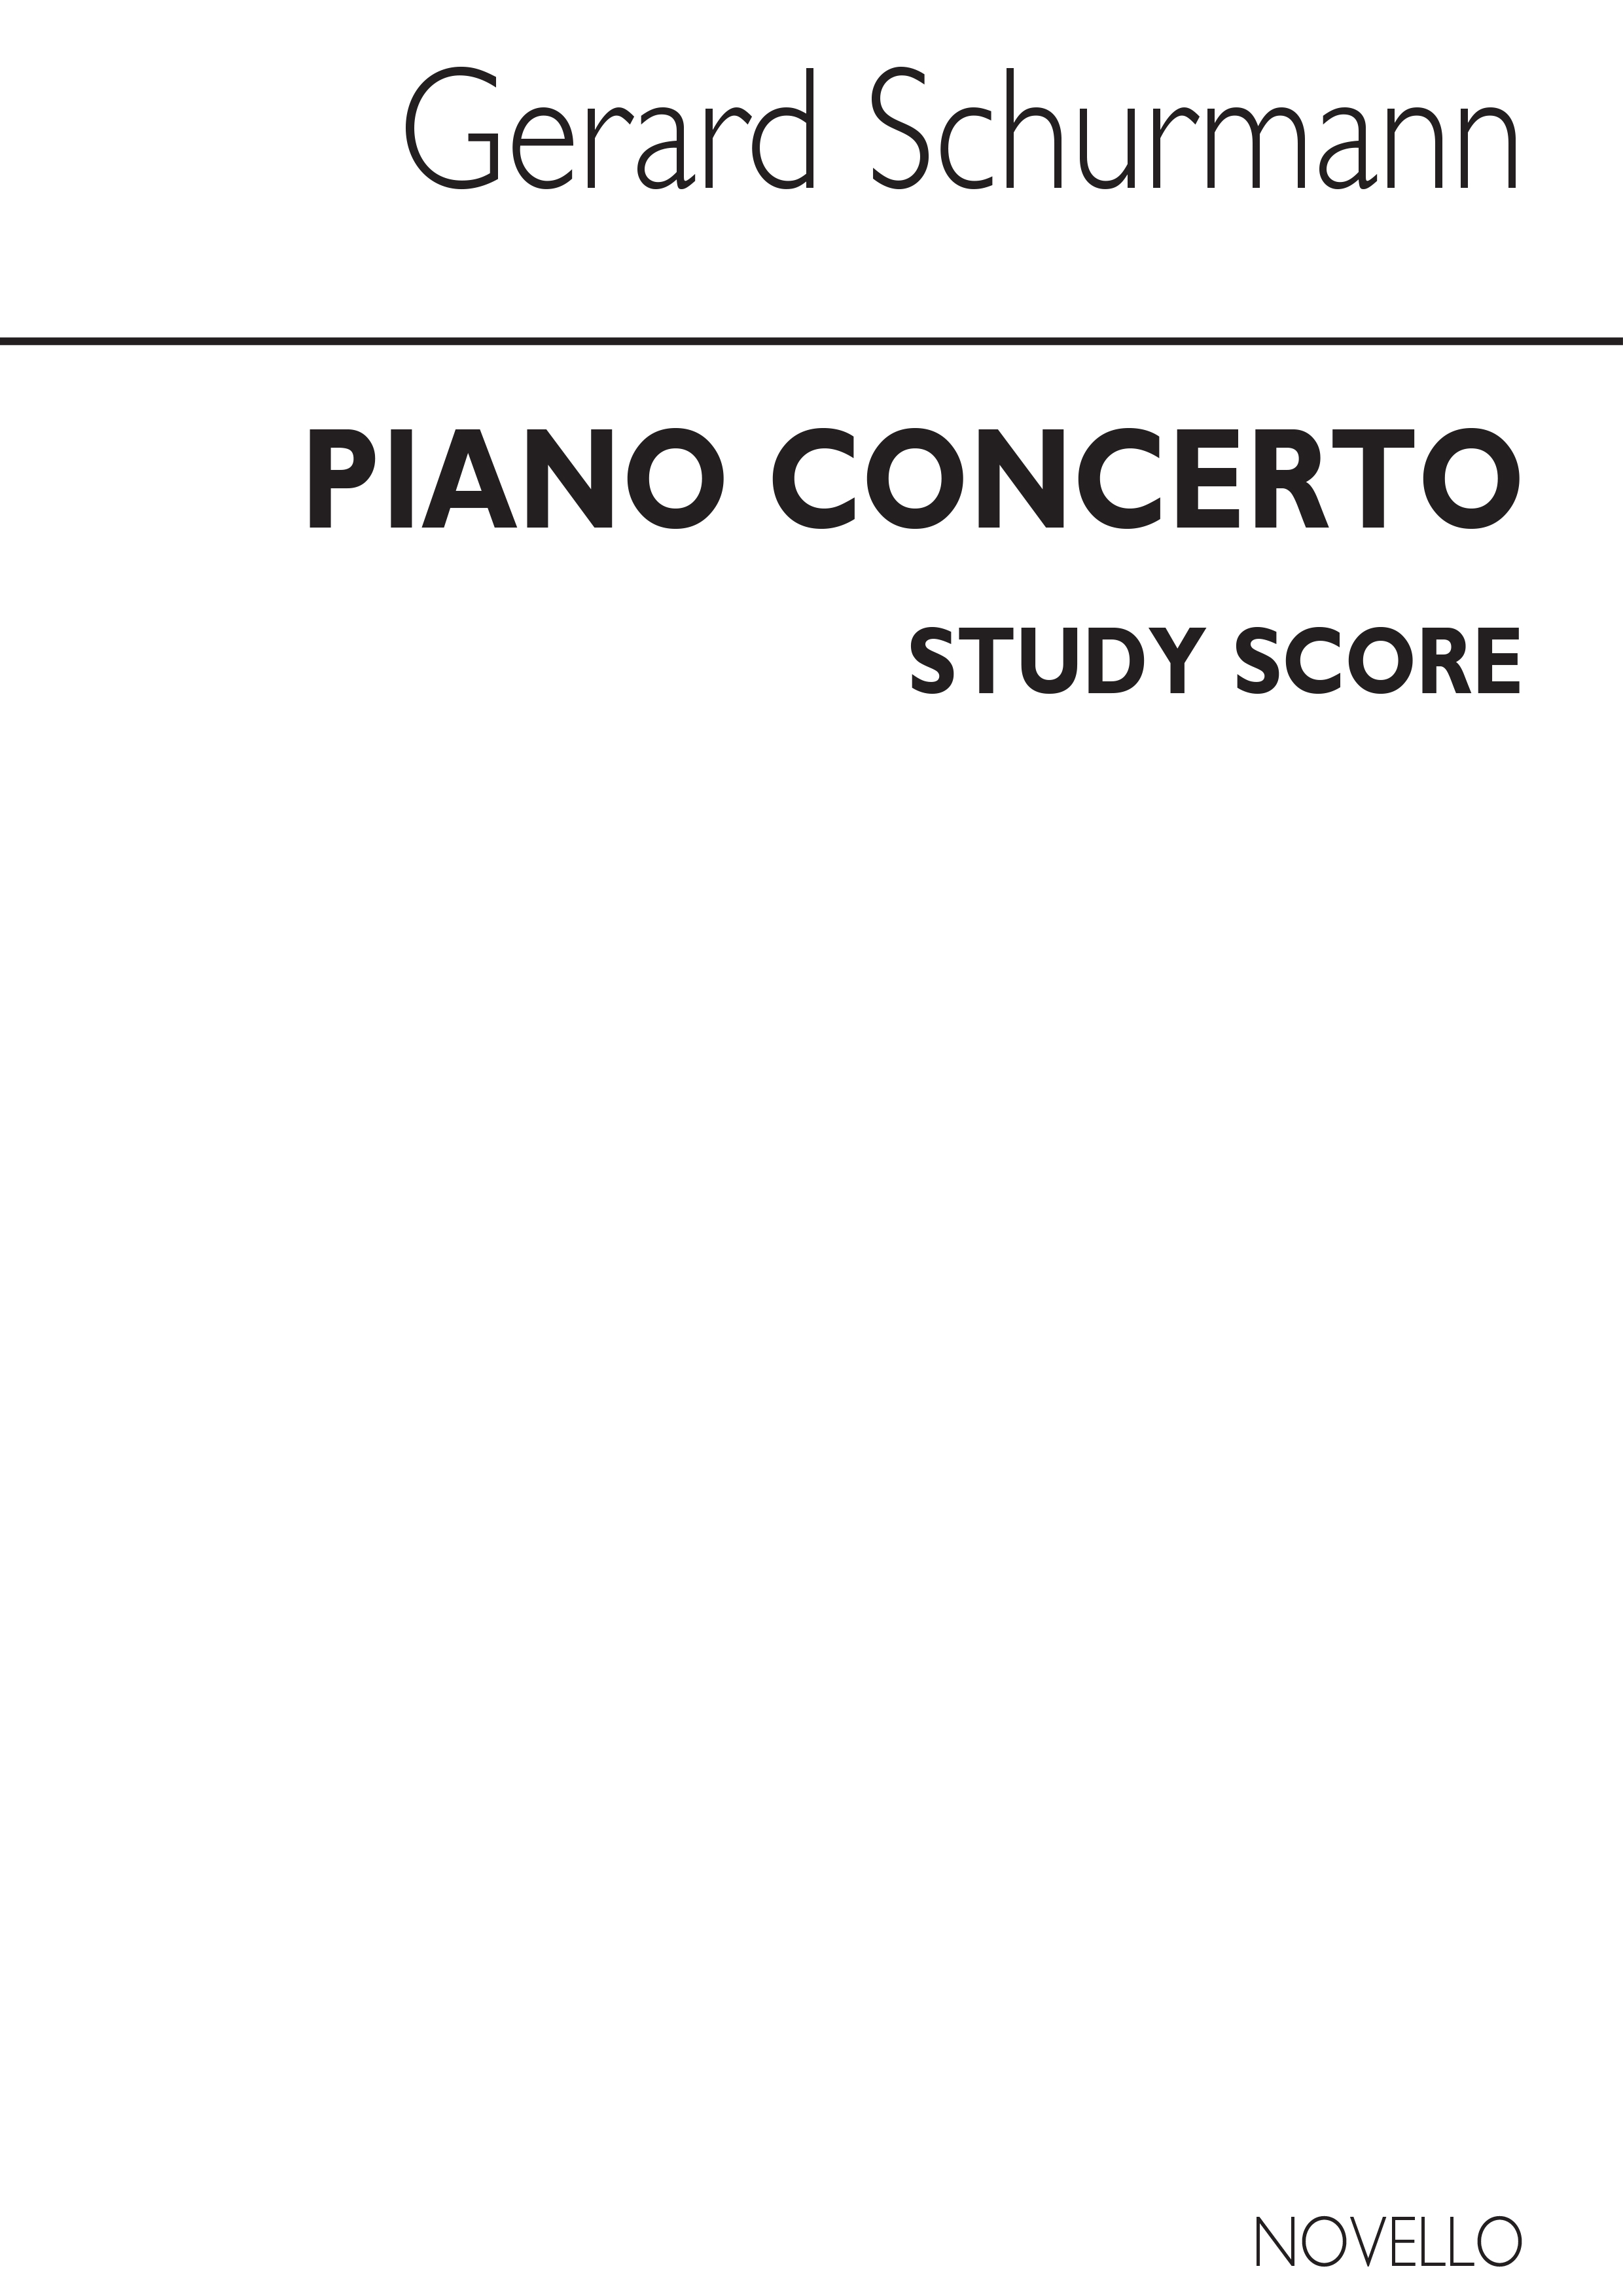 Schurmann: Concerto For Piano (Study Score)